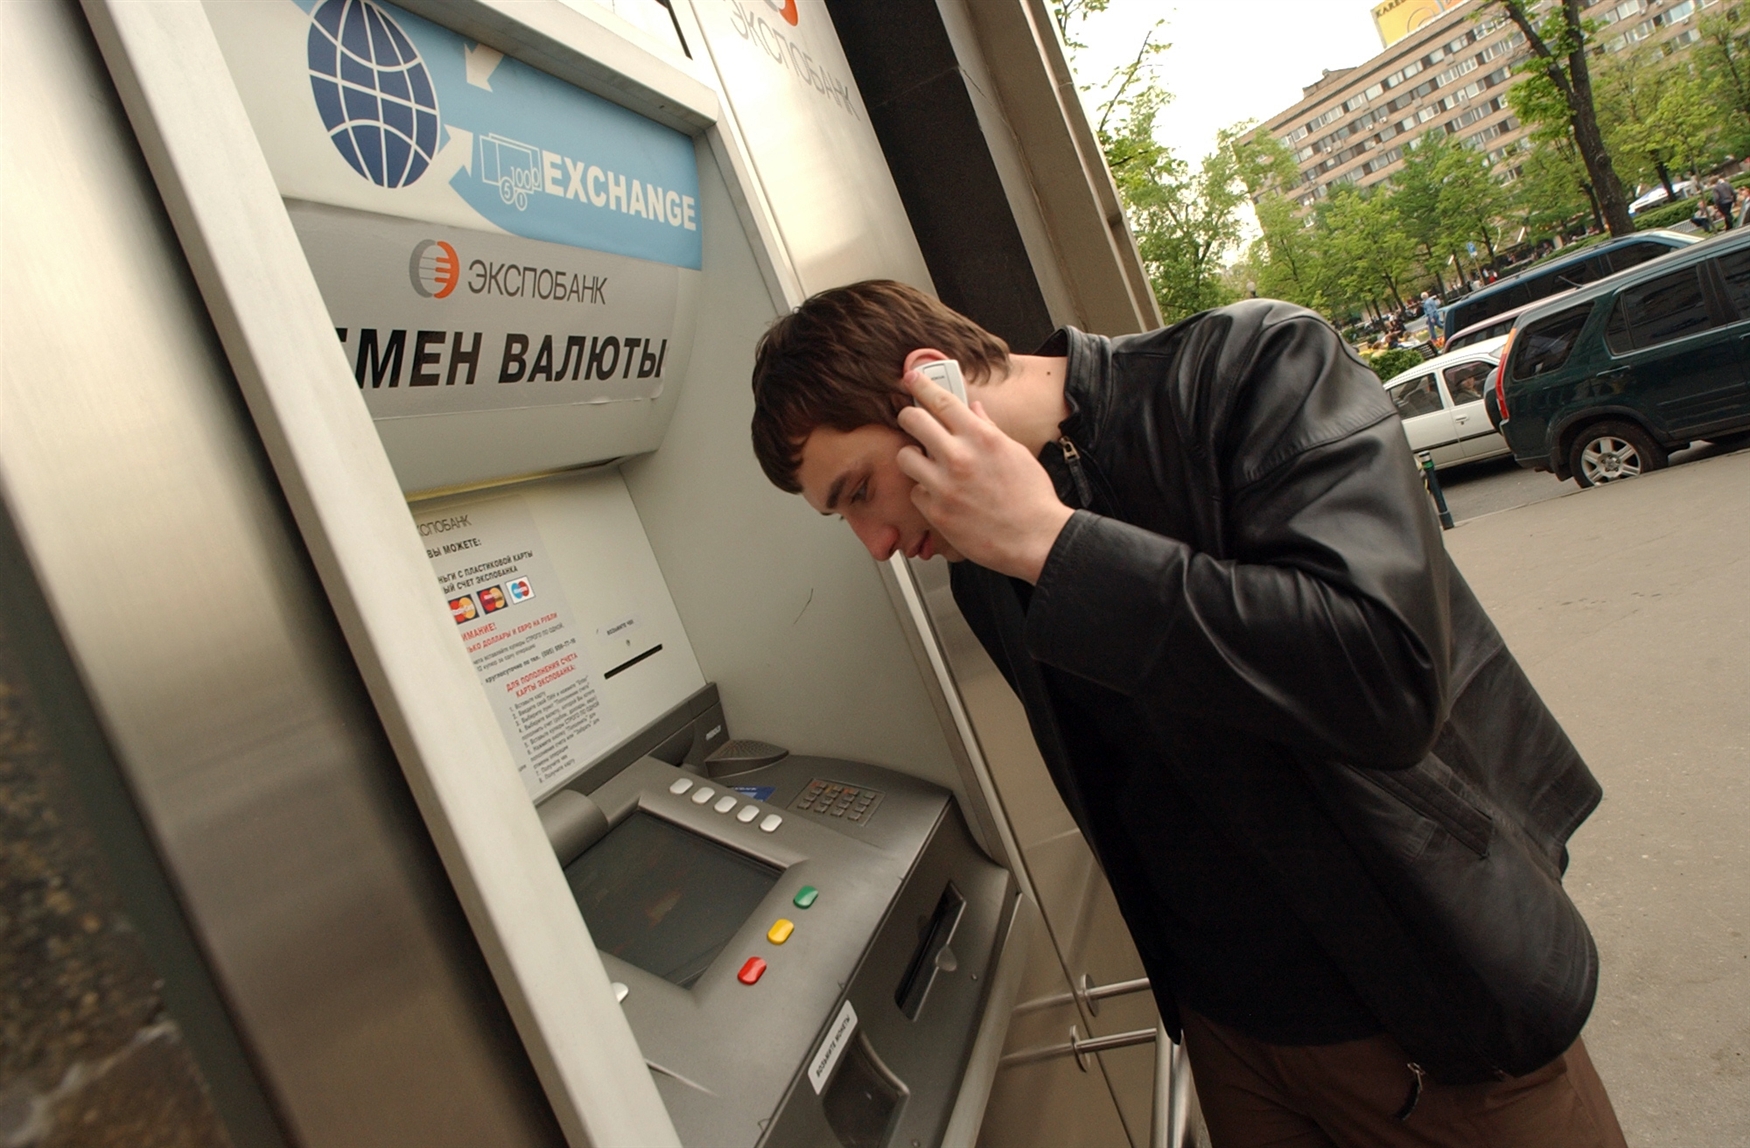 Мошенники крадут деньги. Человек у банкомата. Мошенники Банкомат. Мужчина у банкомата. Человек возле банкомата.